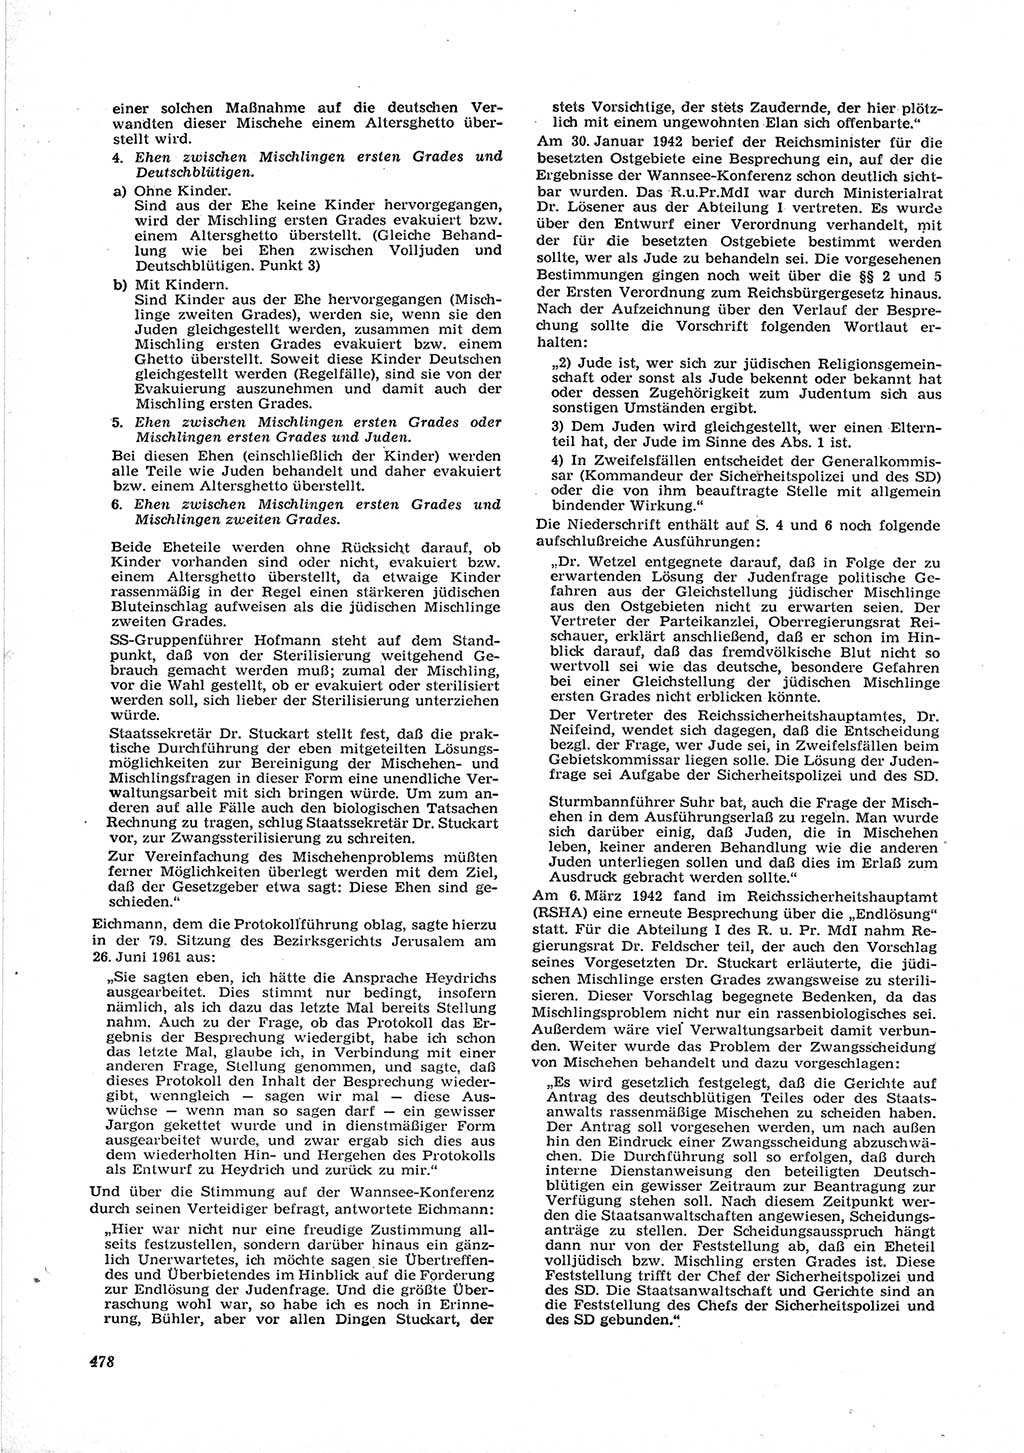 Neue Justiz (NJ), Zeitschrift für Recht und Rechtswissenschaft [Deutsche Demokratische Republik (DDR)], 17. Jahrgang 1963, Seite 478 (NJ DDR 1963, S. 478)